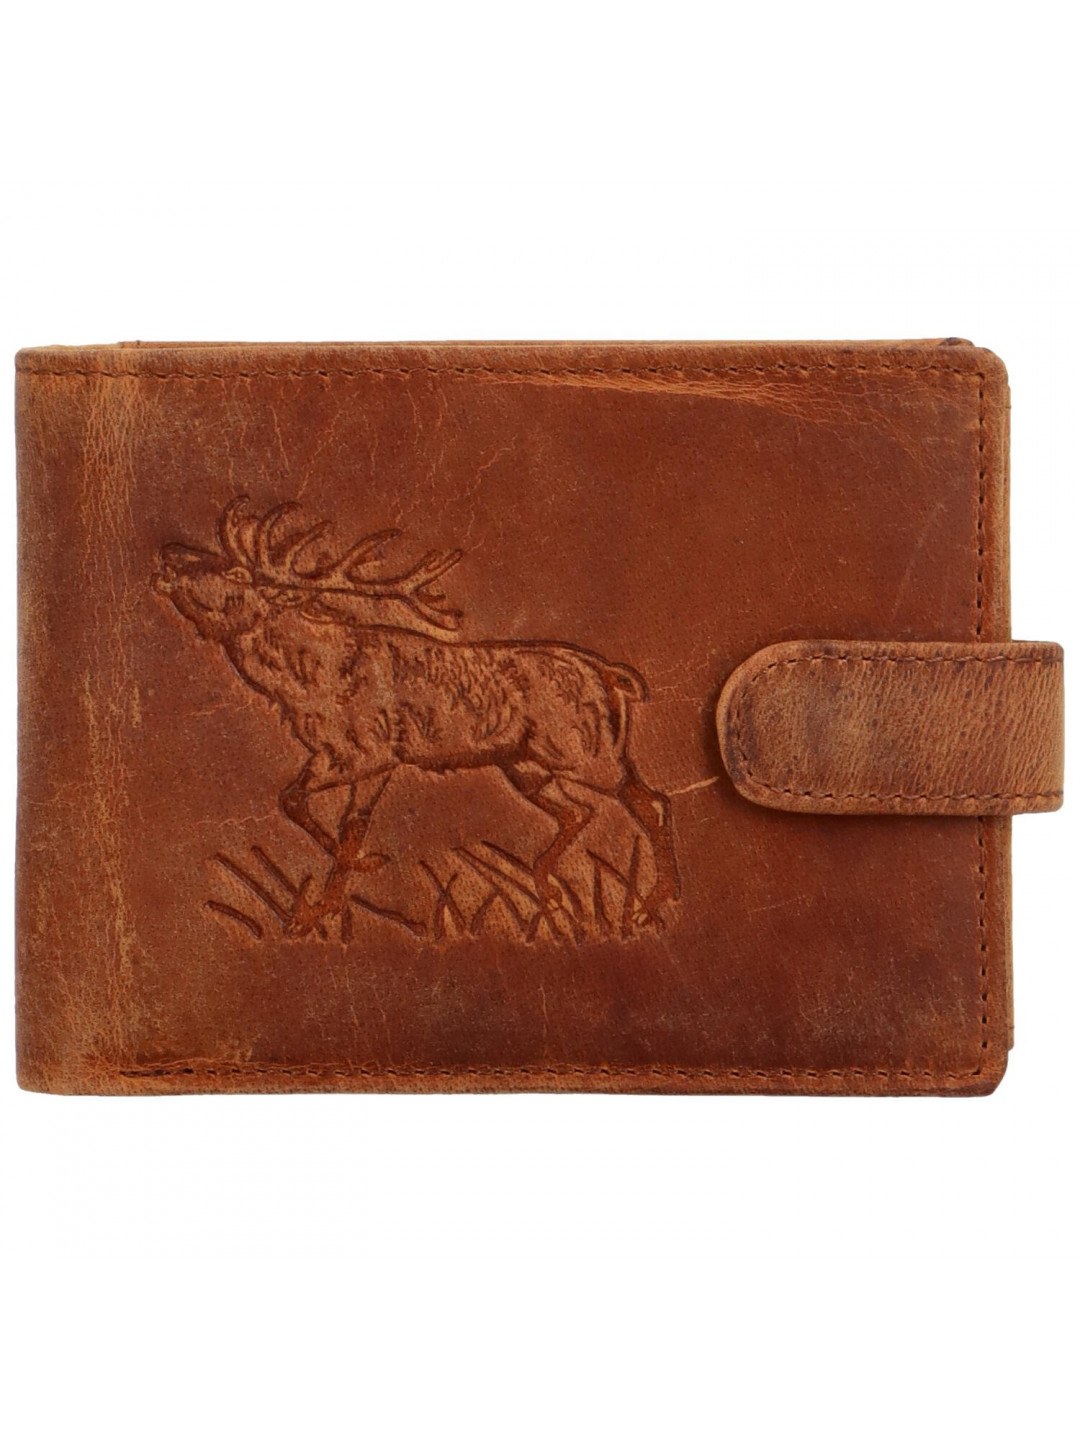 Pánská kožená peněženka Jelen Tristan camel